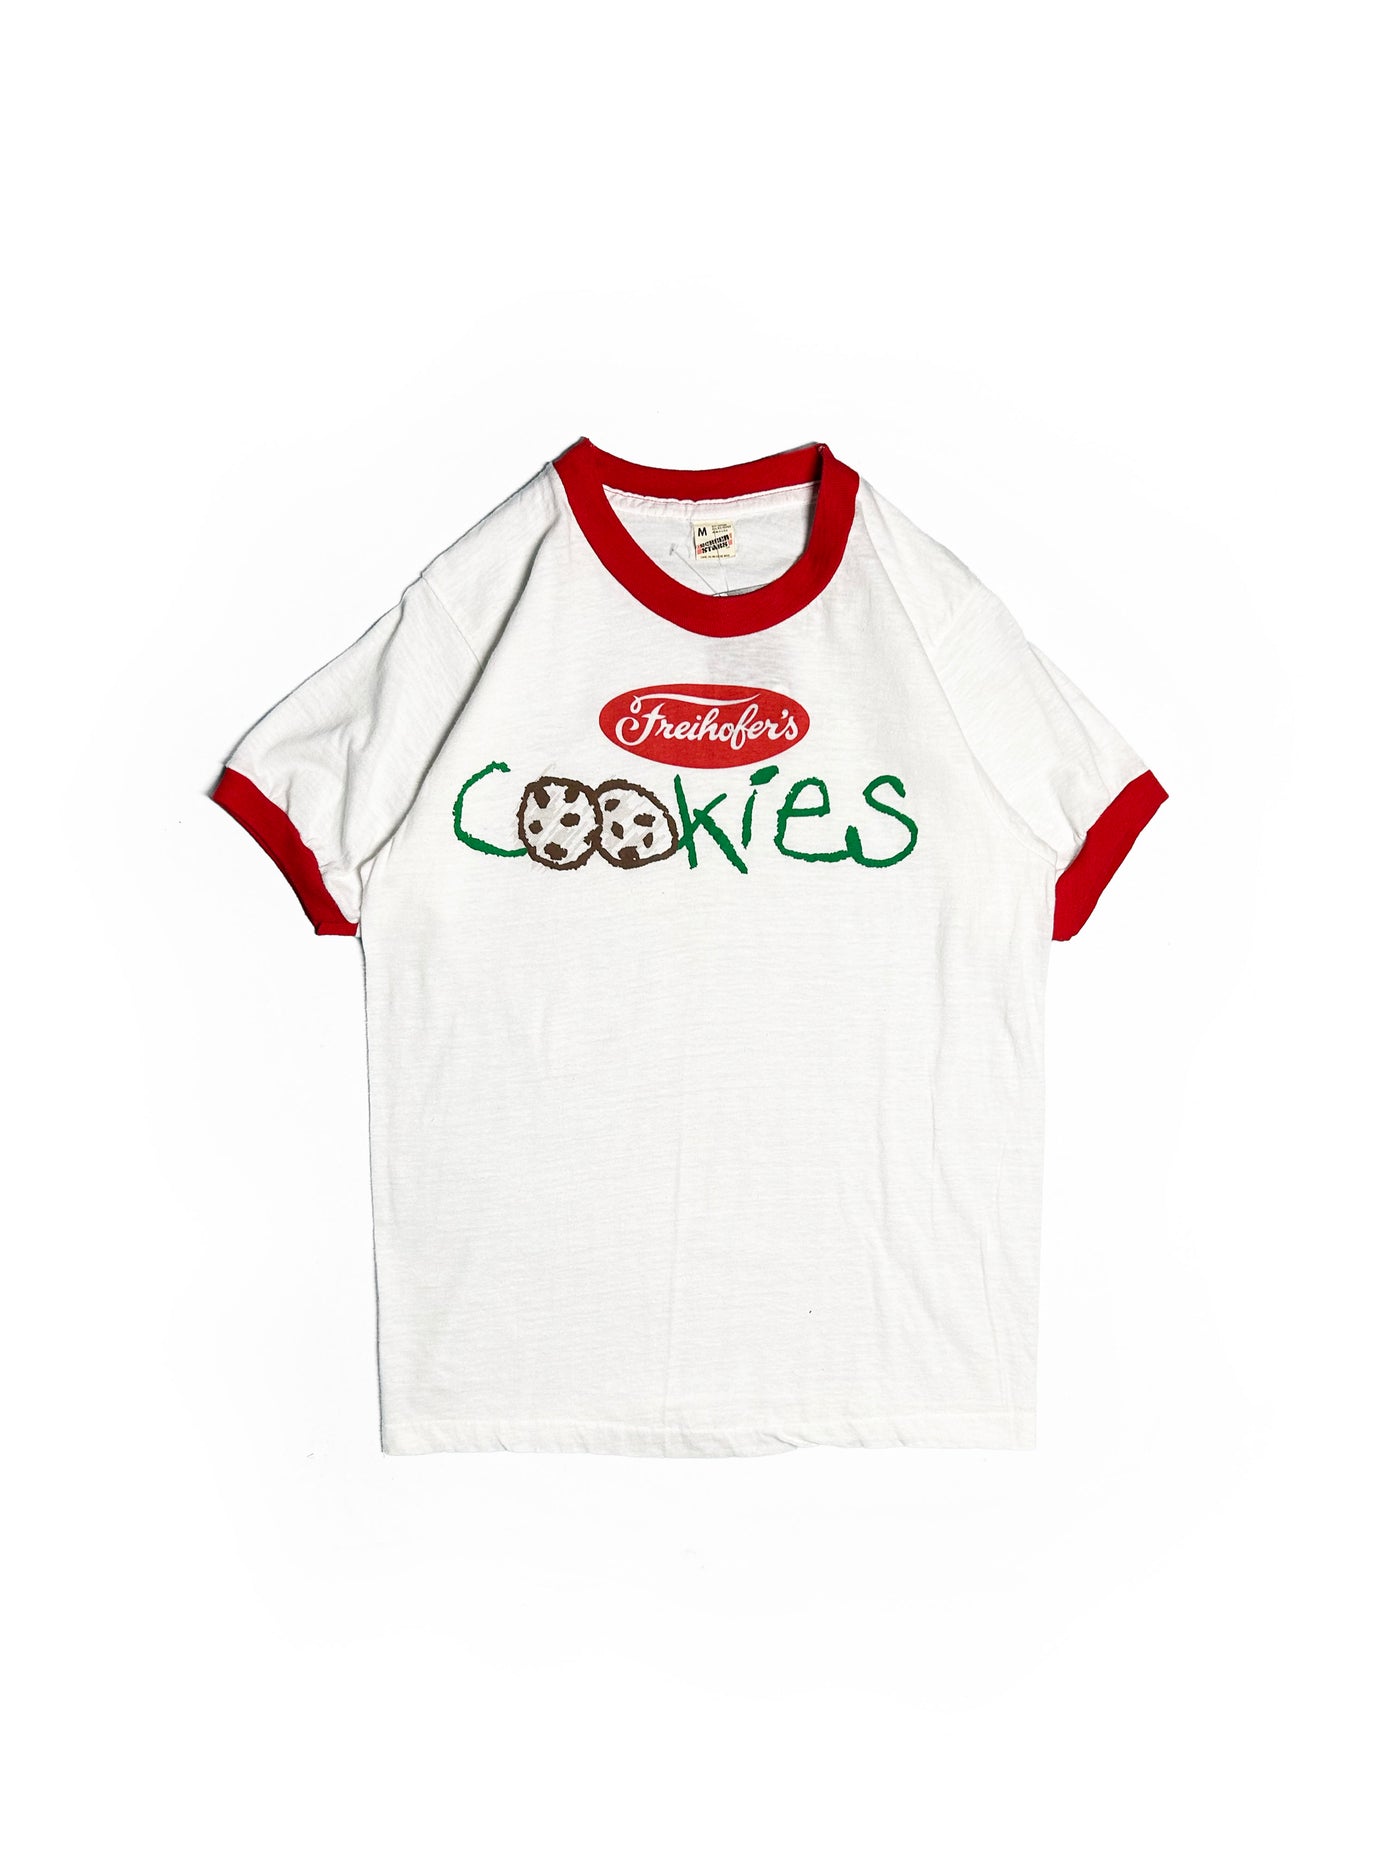 Vintage 80s Freihofer’s Cookies Ringer T-Shirt